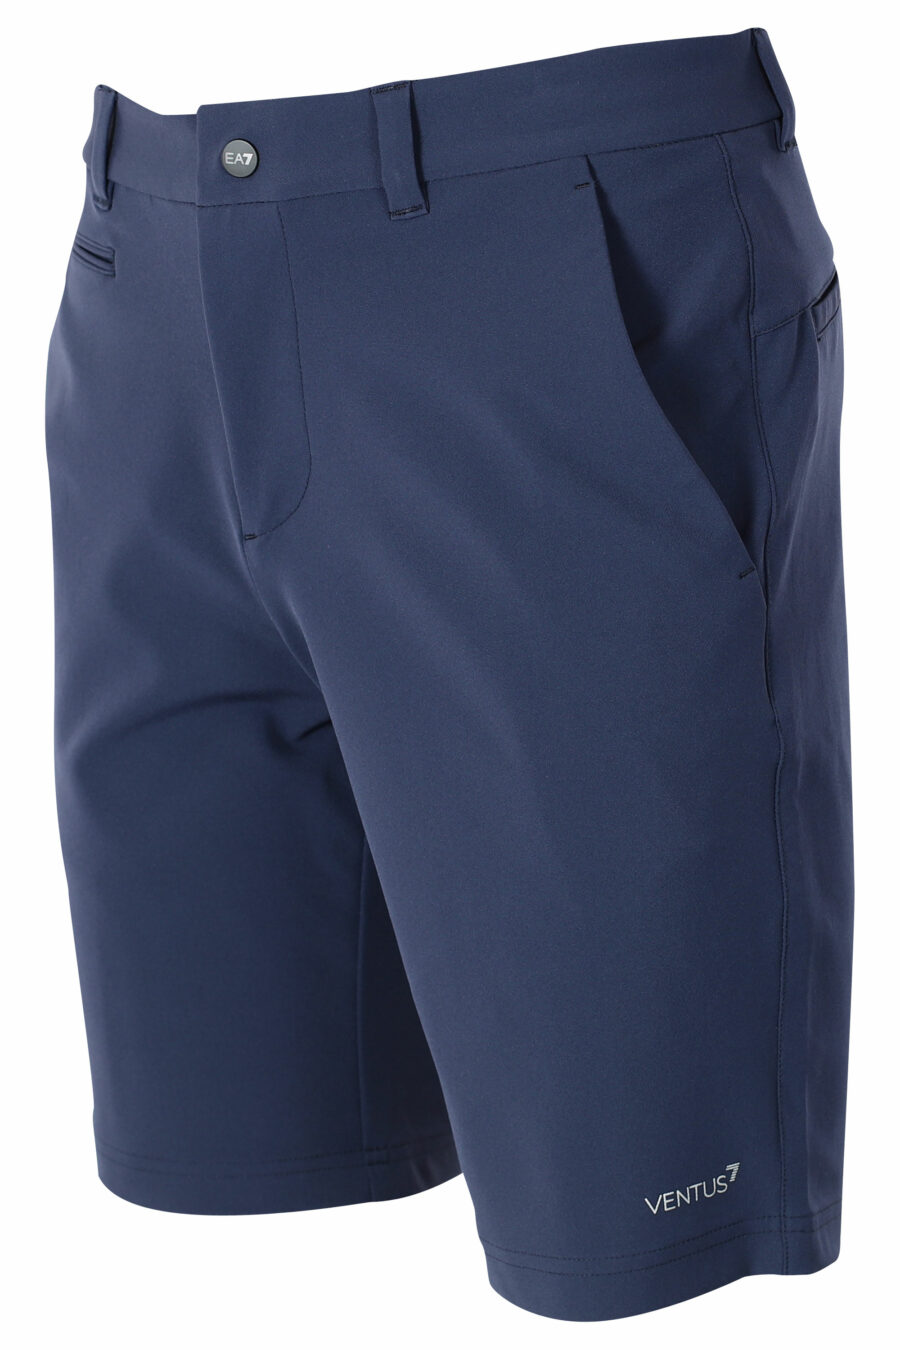 Pantalón azul oscuro corto con minilogo - IMG 9571